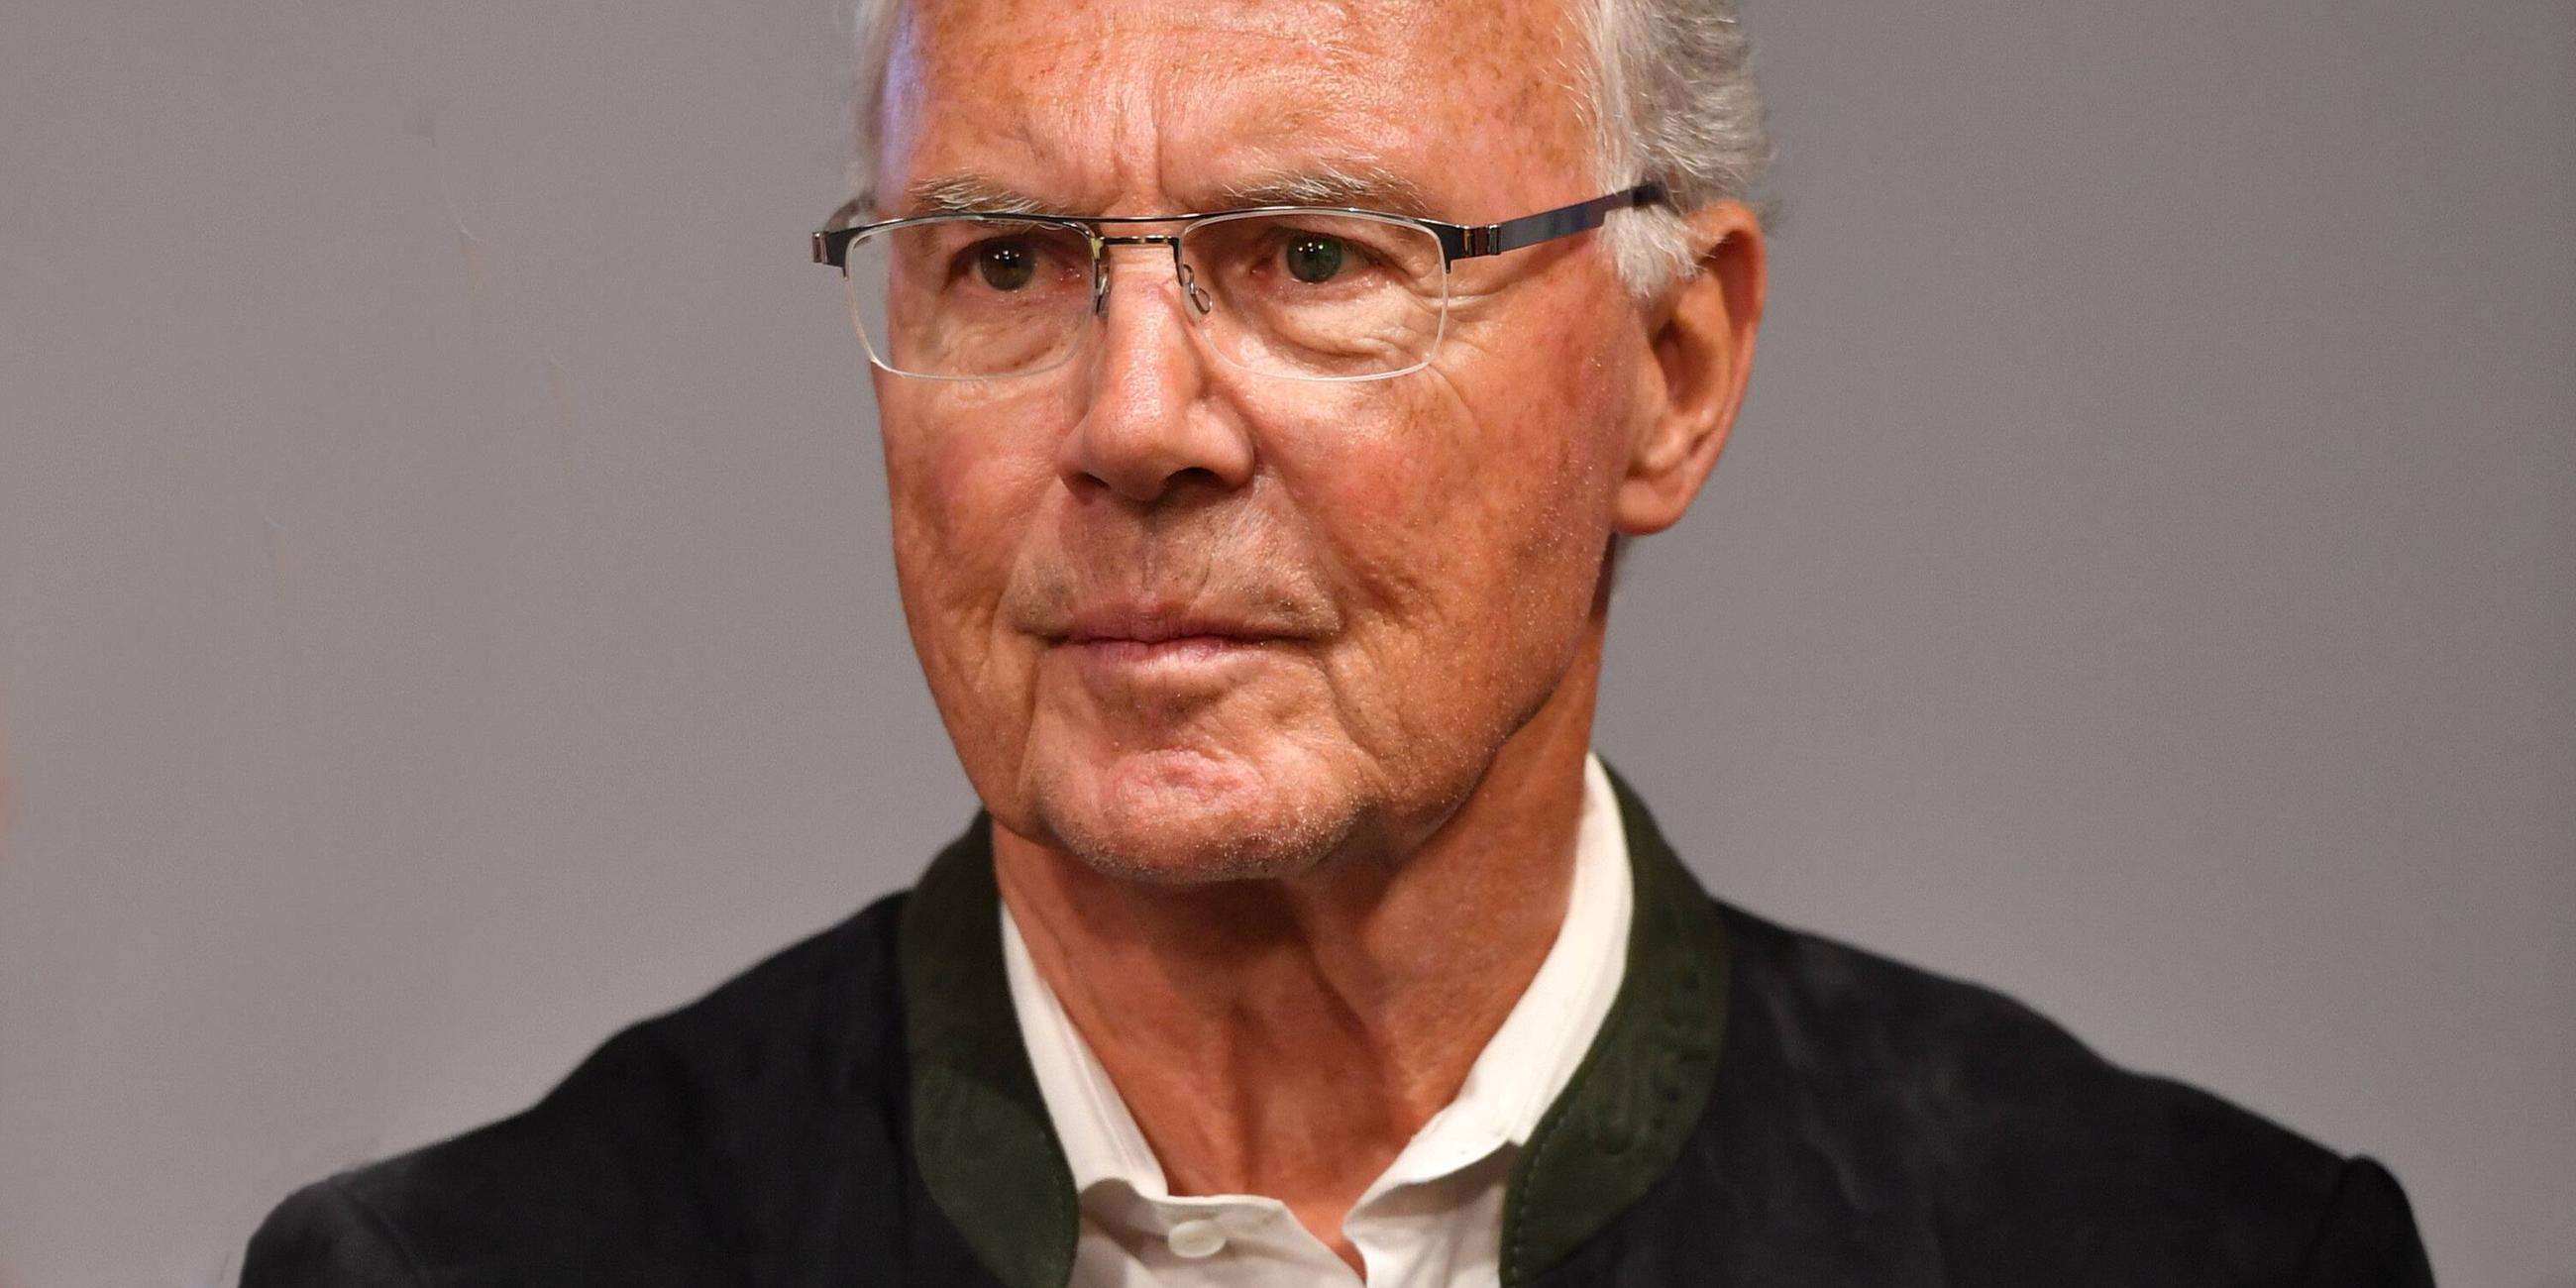 Ermittlungen wegen WM Vergabe 2006 Bericht Franz Beckenbauer aus gesundheitlichen Gruenden nicht v